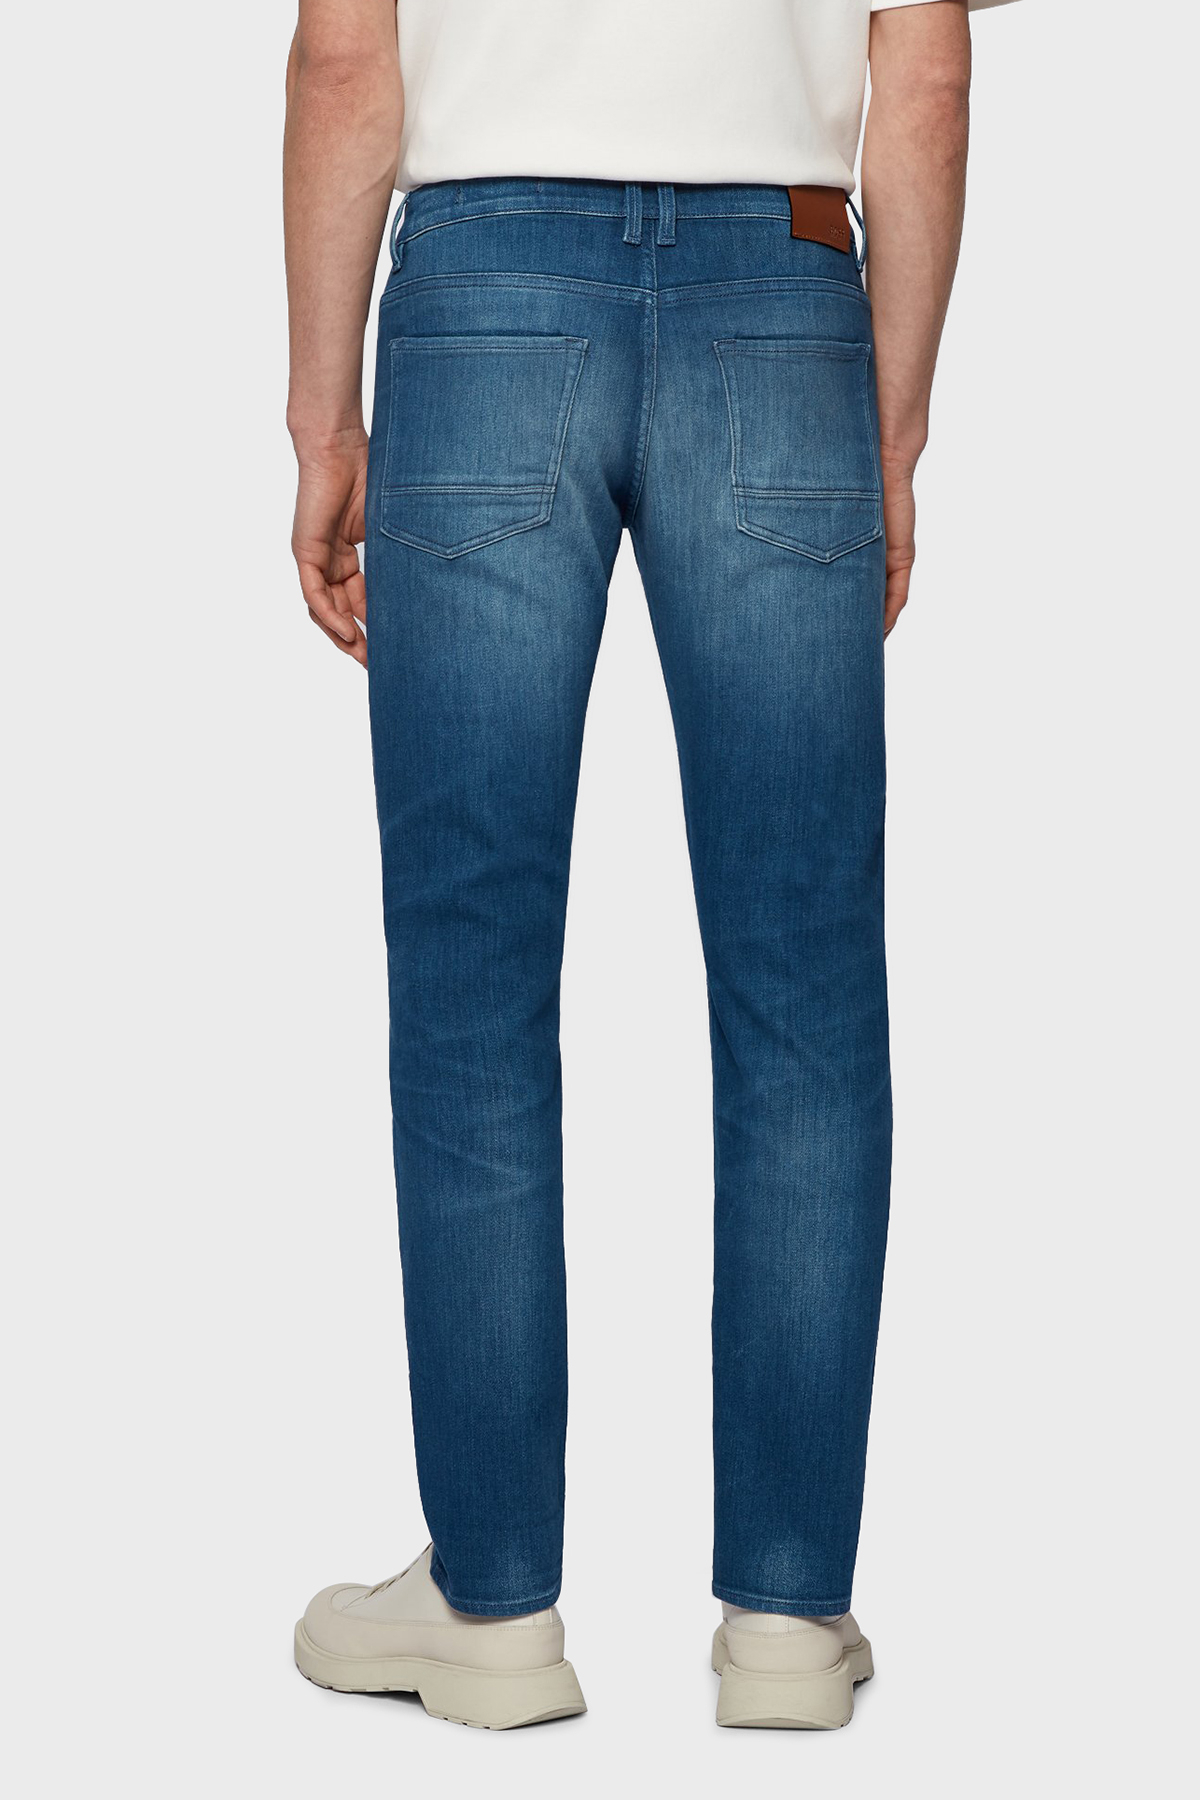 Hugo Boss Slim Fit Cepli Pamuklu Jeans Erkek Kot Pantolon 50453155 420 KOYU MAVİ